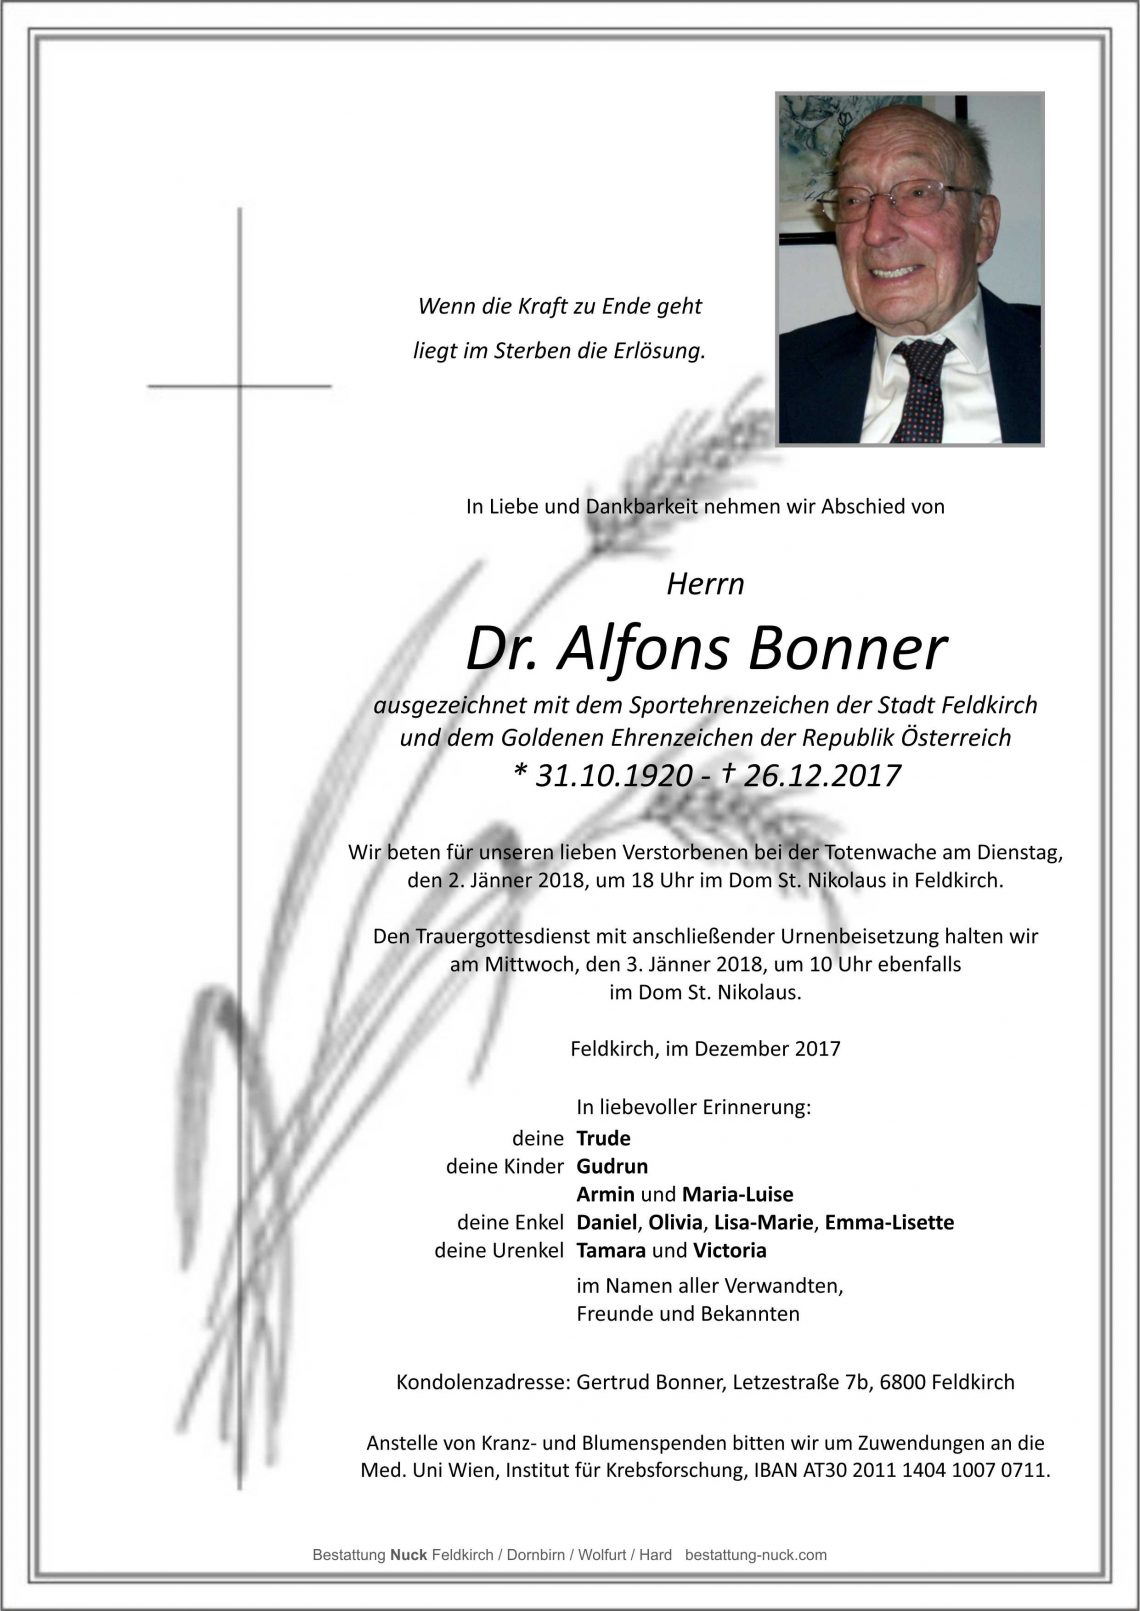 Dr. Alfons Bonner - Bestattung Nuck